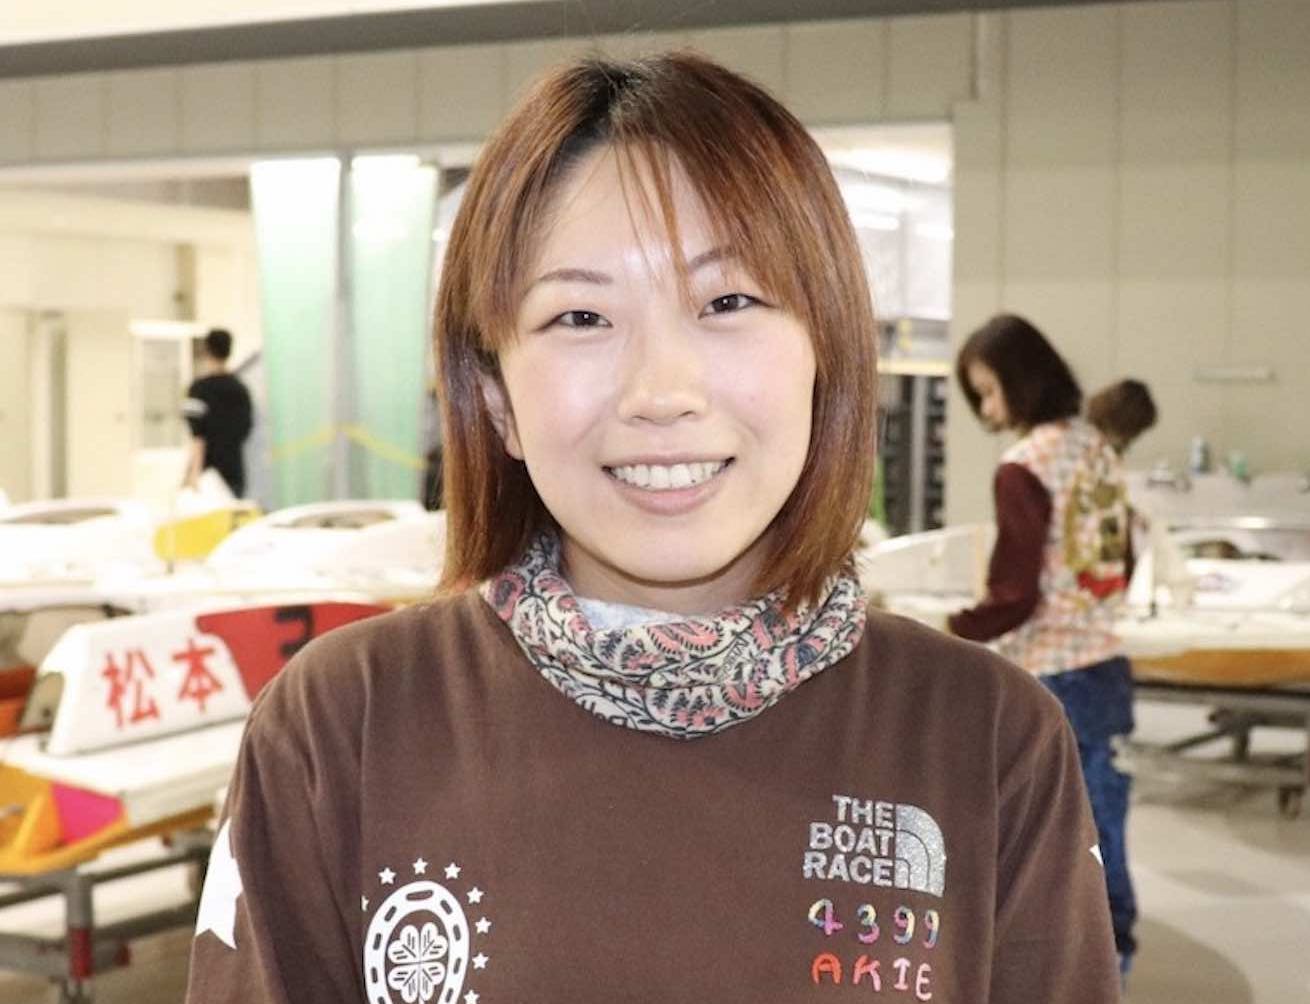 松本晶恵という女子競艇選手(ボートレーサー)